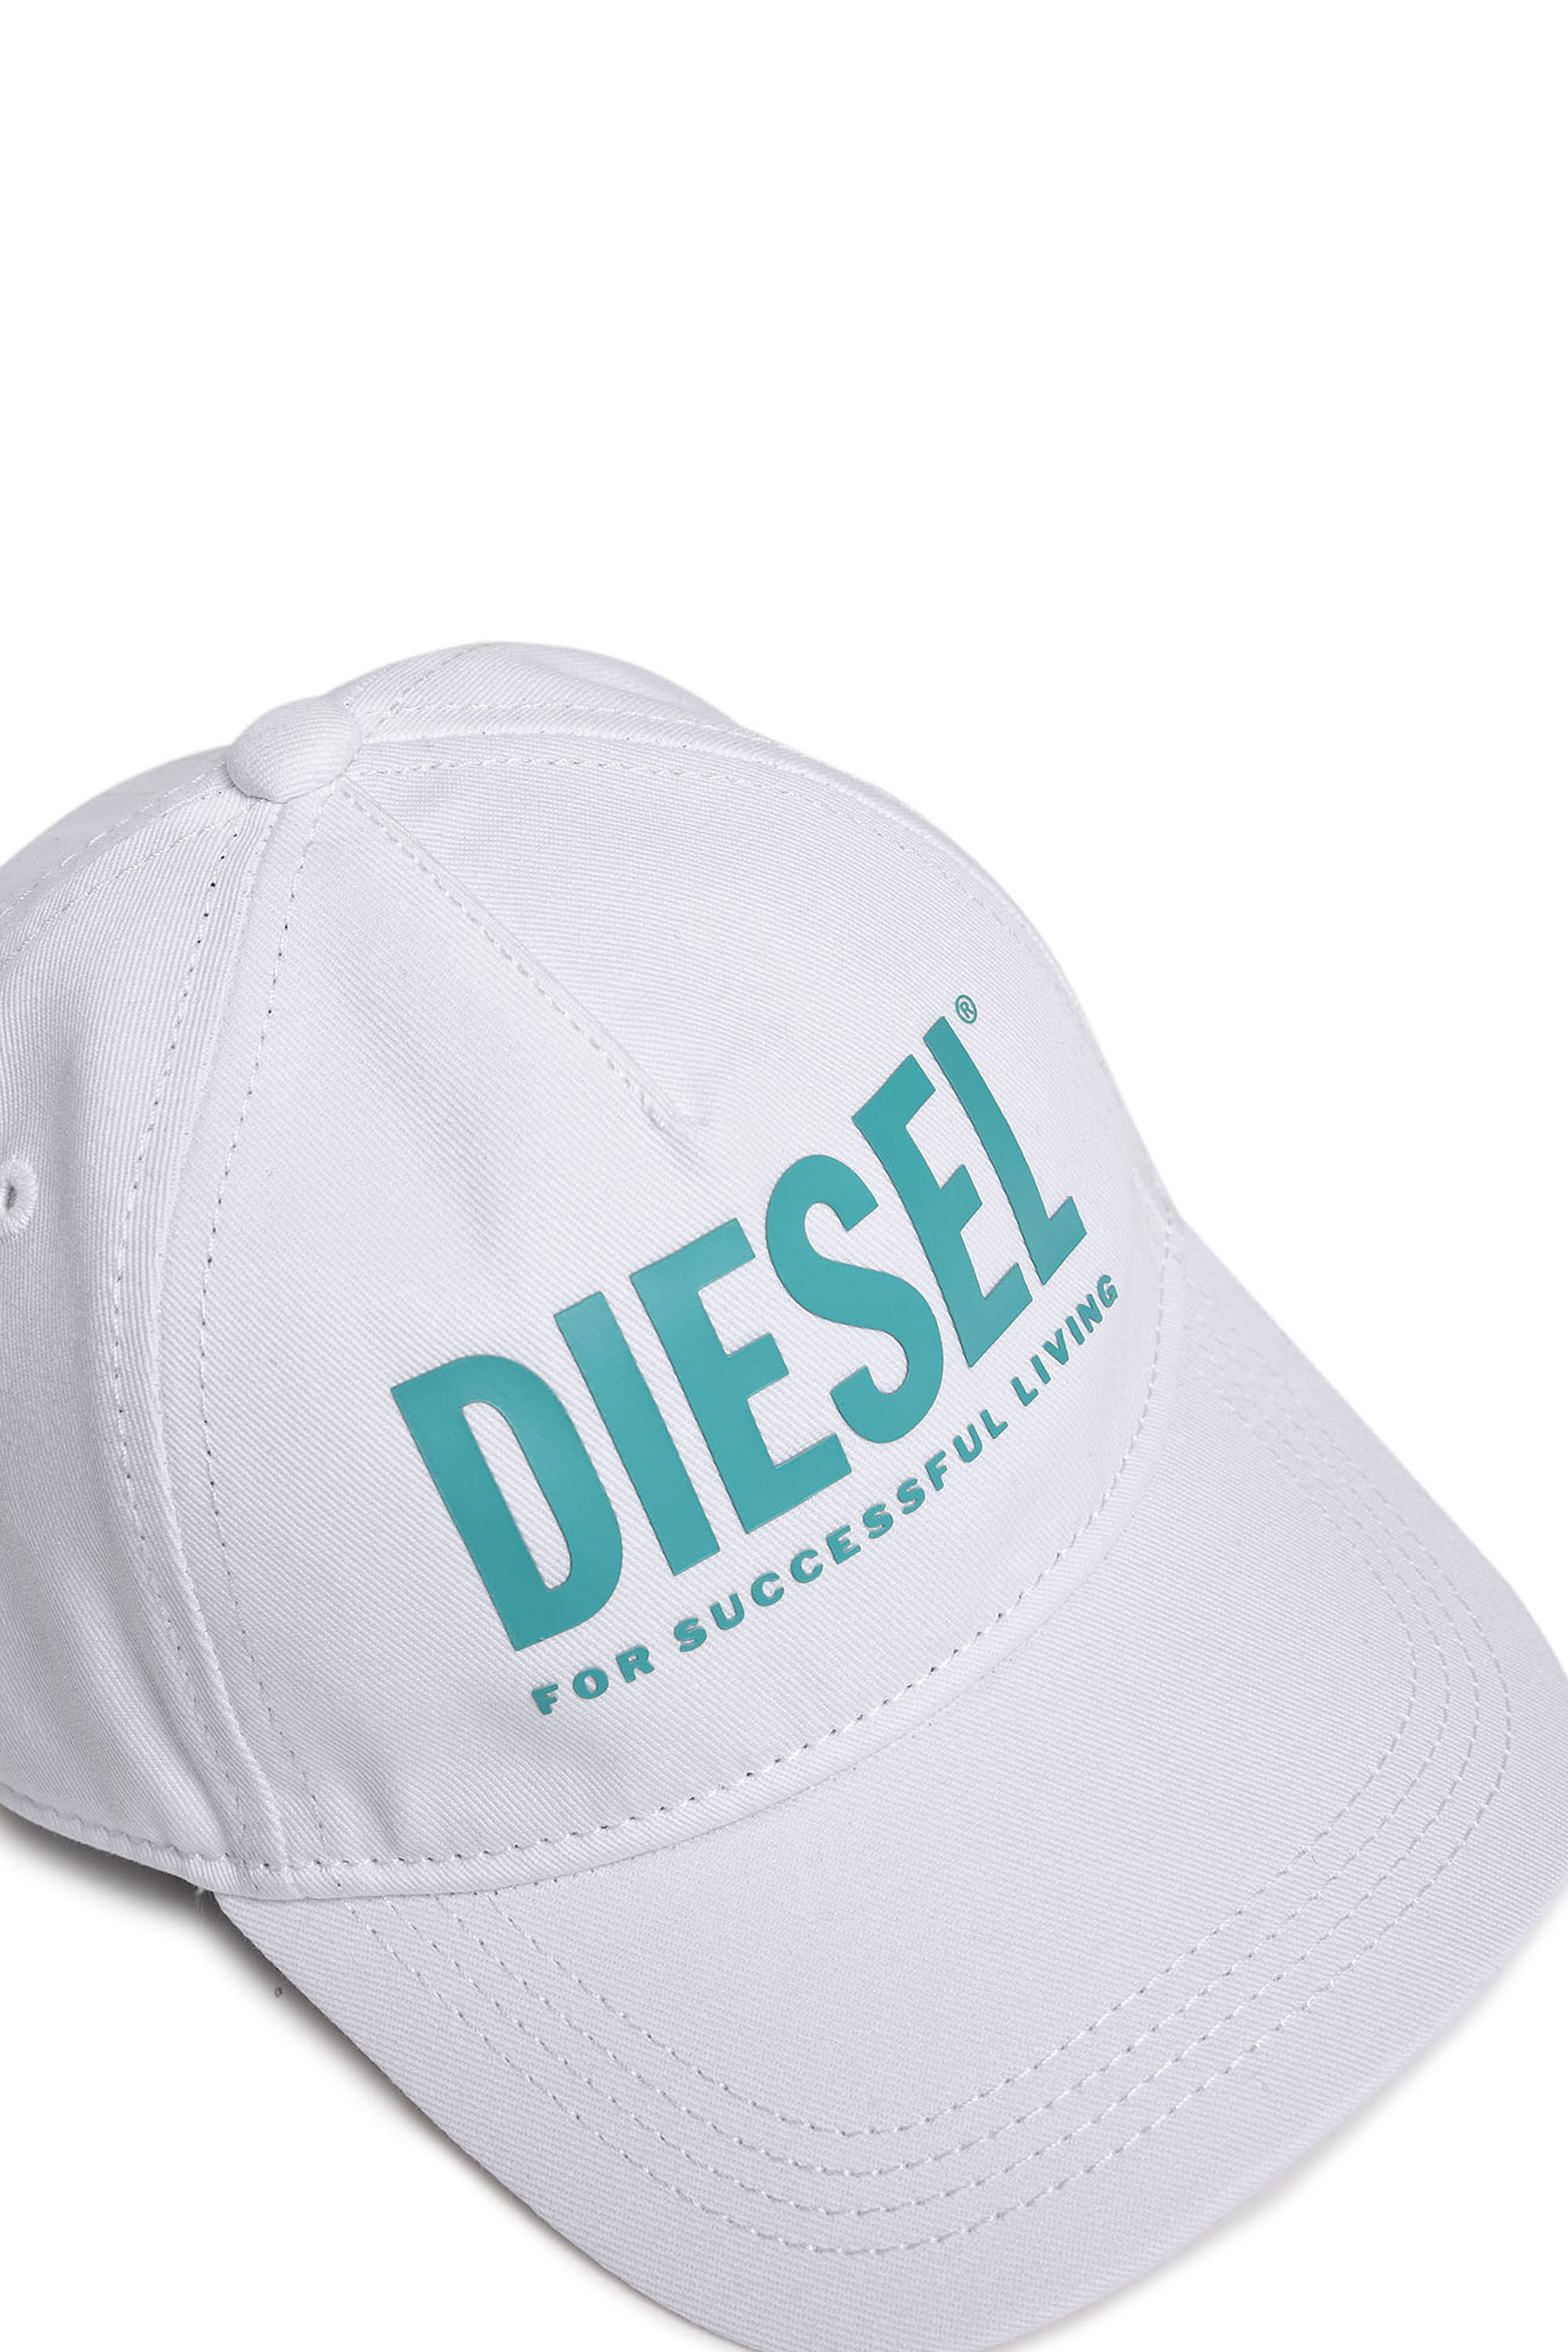 Diesel - FTOLLYB, Blanco - Image 3